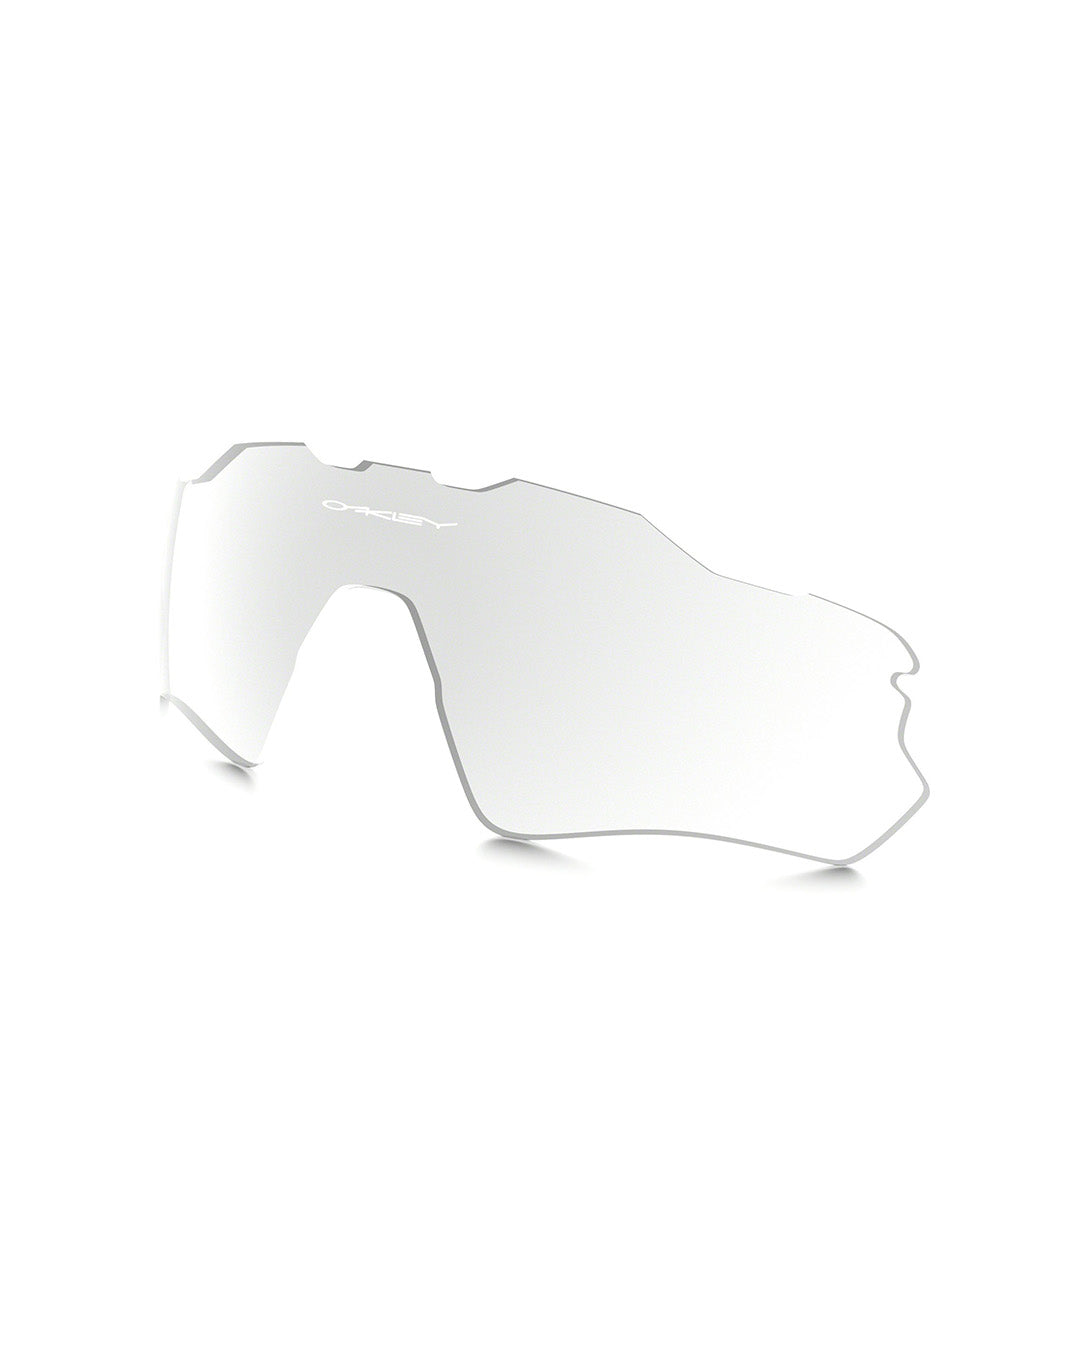 Quelles lunettes Oakley pour quel usage ? #2 : RADAR EV PATH